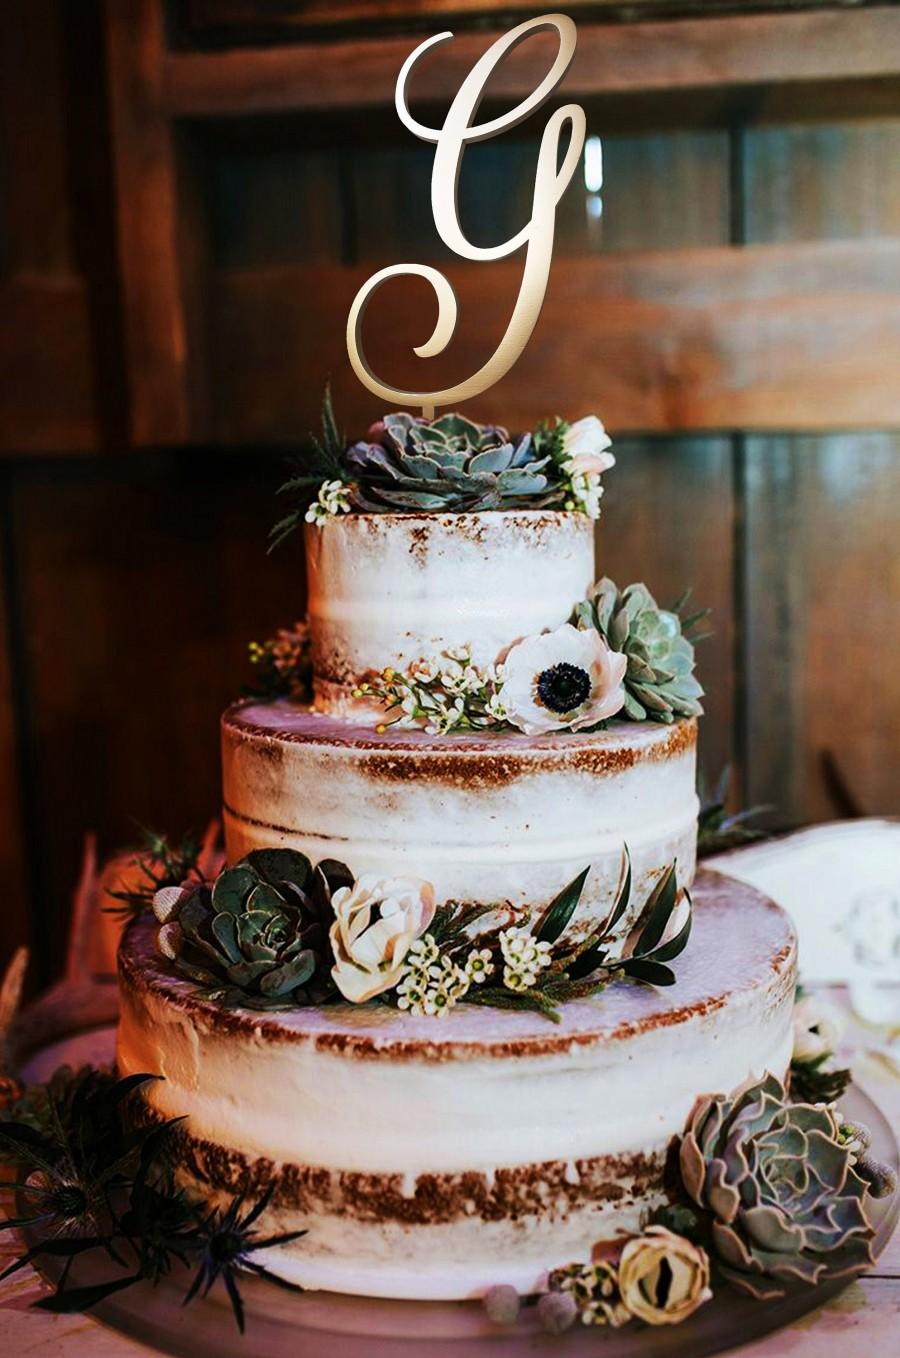 Wedding - Letter G Cake Topper Wedding Cake Topper Initials cake topper Cake toppers single letters natural wood monogram cake topper wedding letter g